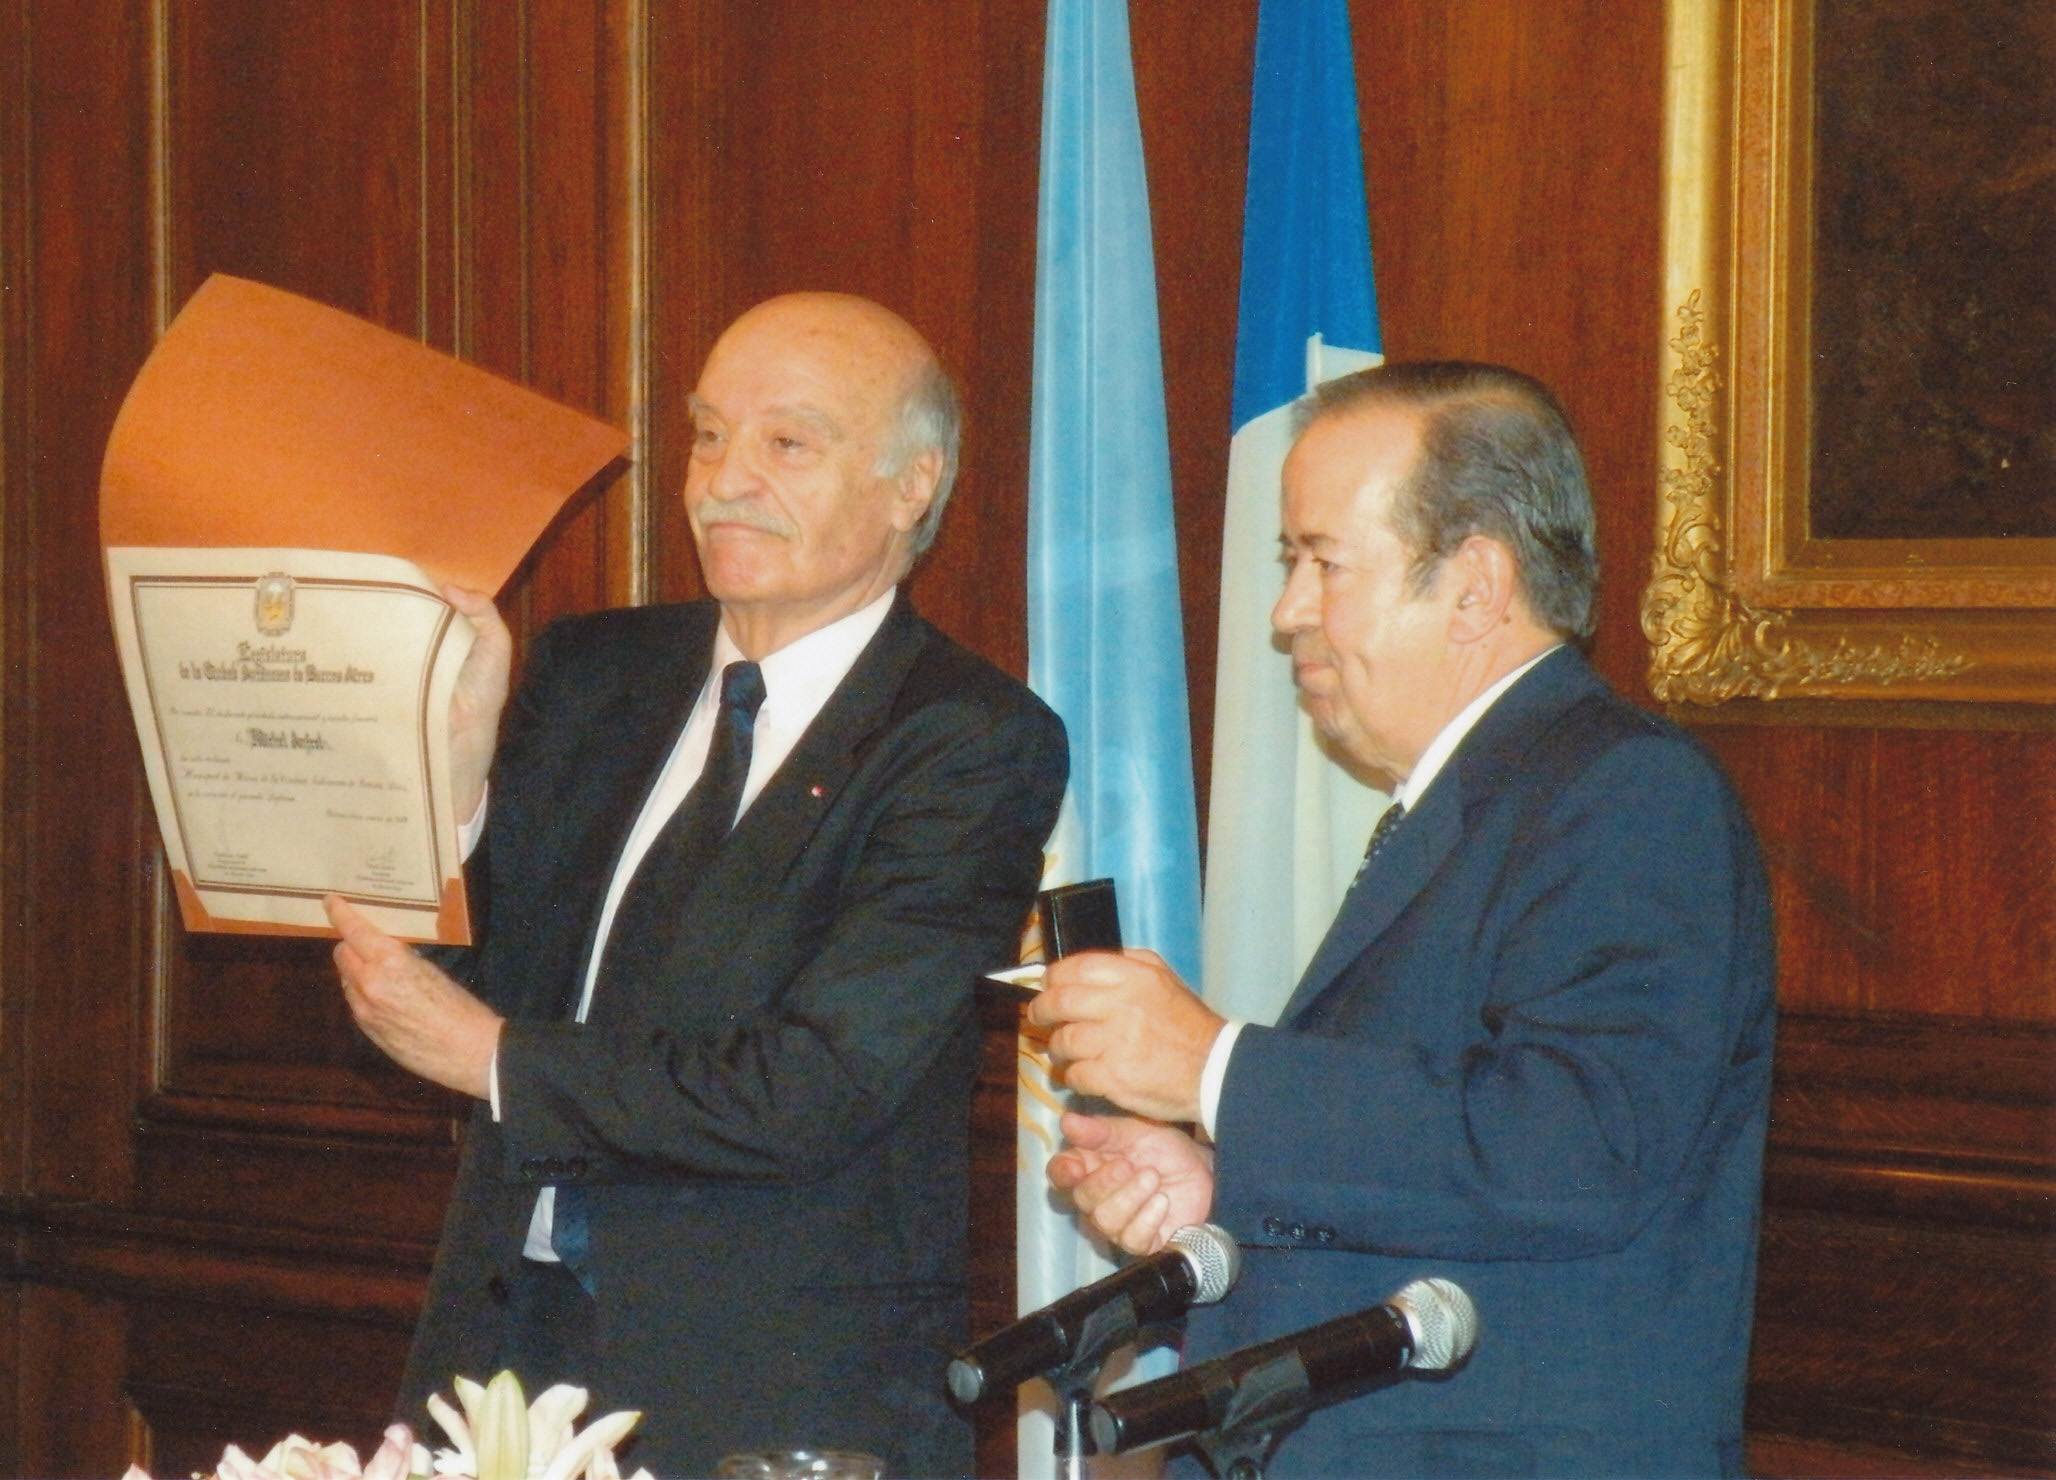 Michel Anfrol fait citoyen d’honneur de Buenos-Aires par Guillermo Smith, président de la législature municipale (27.3.2009). Photo Collection particulière. -